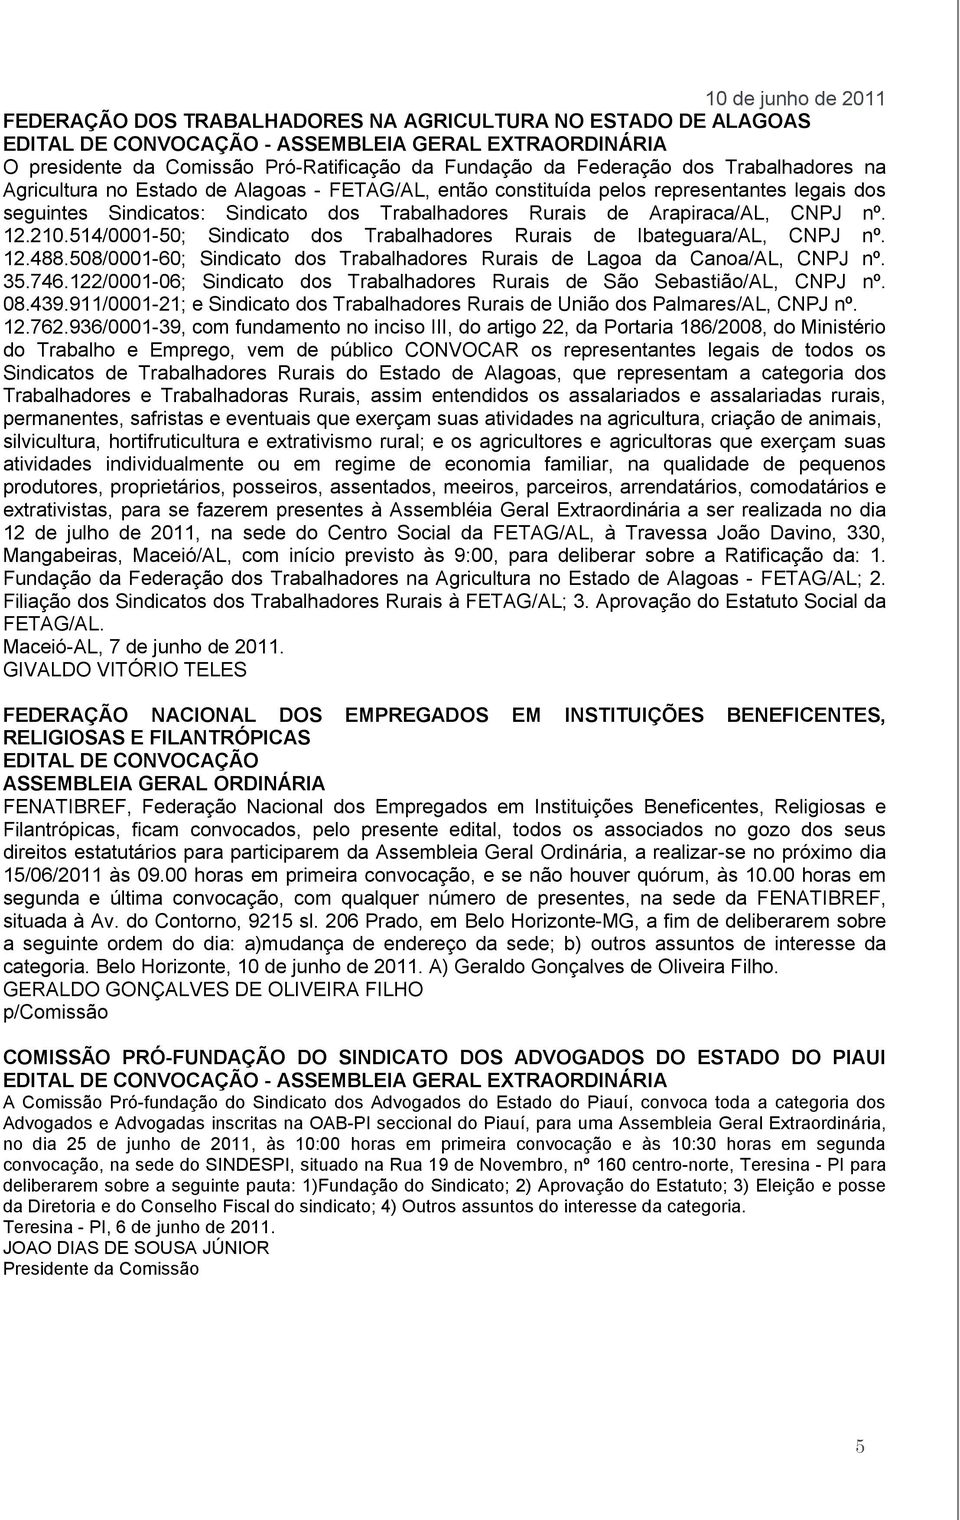 514/0001-50; Sindicato dos Trabalhadores Rurais de Ibateguara/AL, CNPJ nº. 12.488.508/0001-60; Sindicato dos Trabalhadores Rurais de Lagoa da Canoa/AL, CNPJ nº. 35.746.